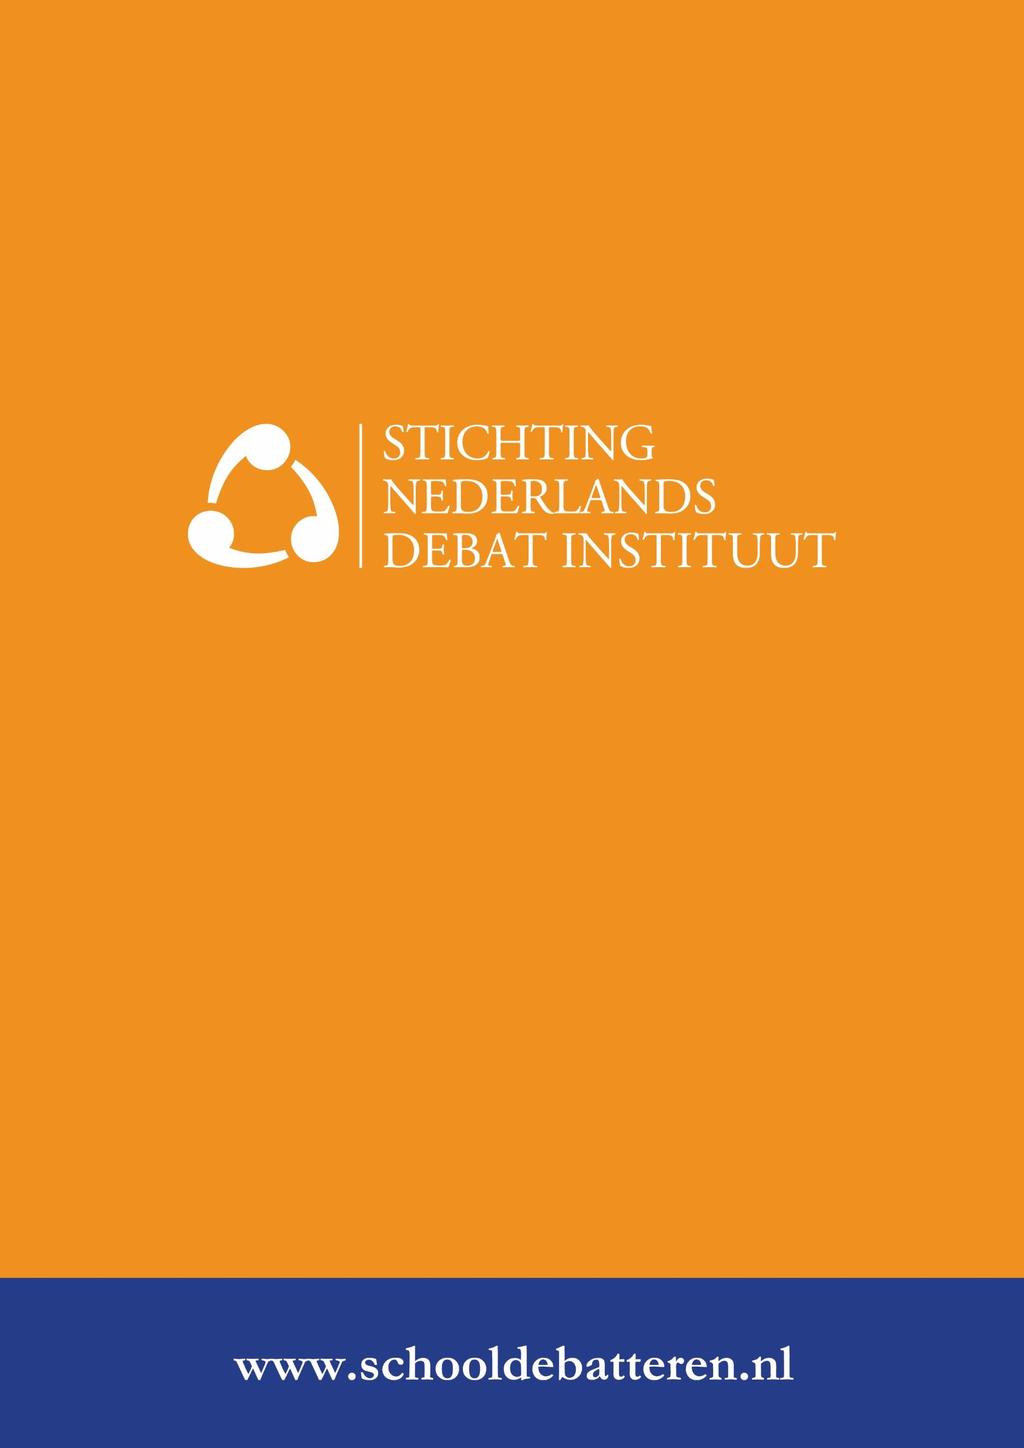 Doel van de Stichting Nederlands Debat Instituut is het bevorderen van retorica- en debatonderwijs binnen alle lagen van het Nederlandse onderwijs.